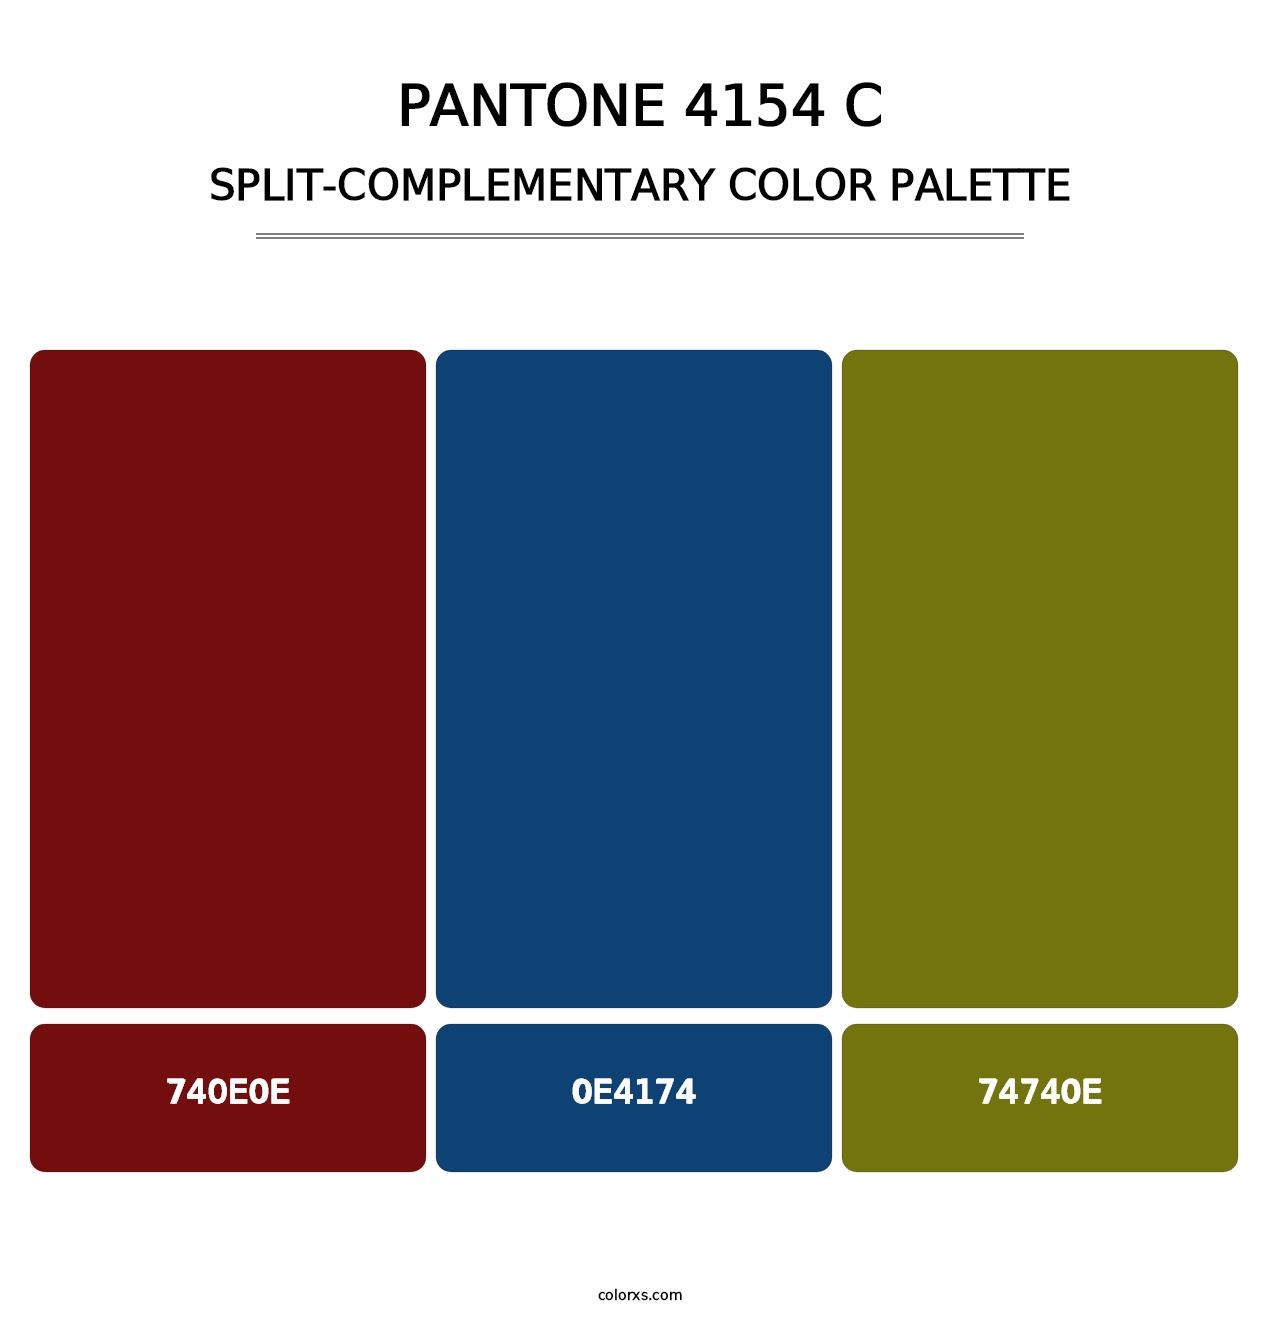 PANTONE 4154 C - Split-Complementary Color Palette